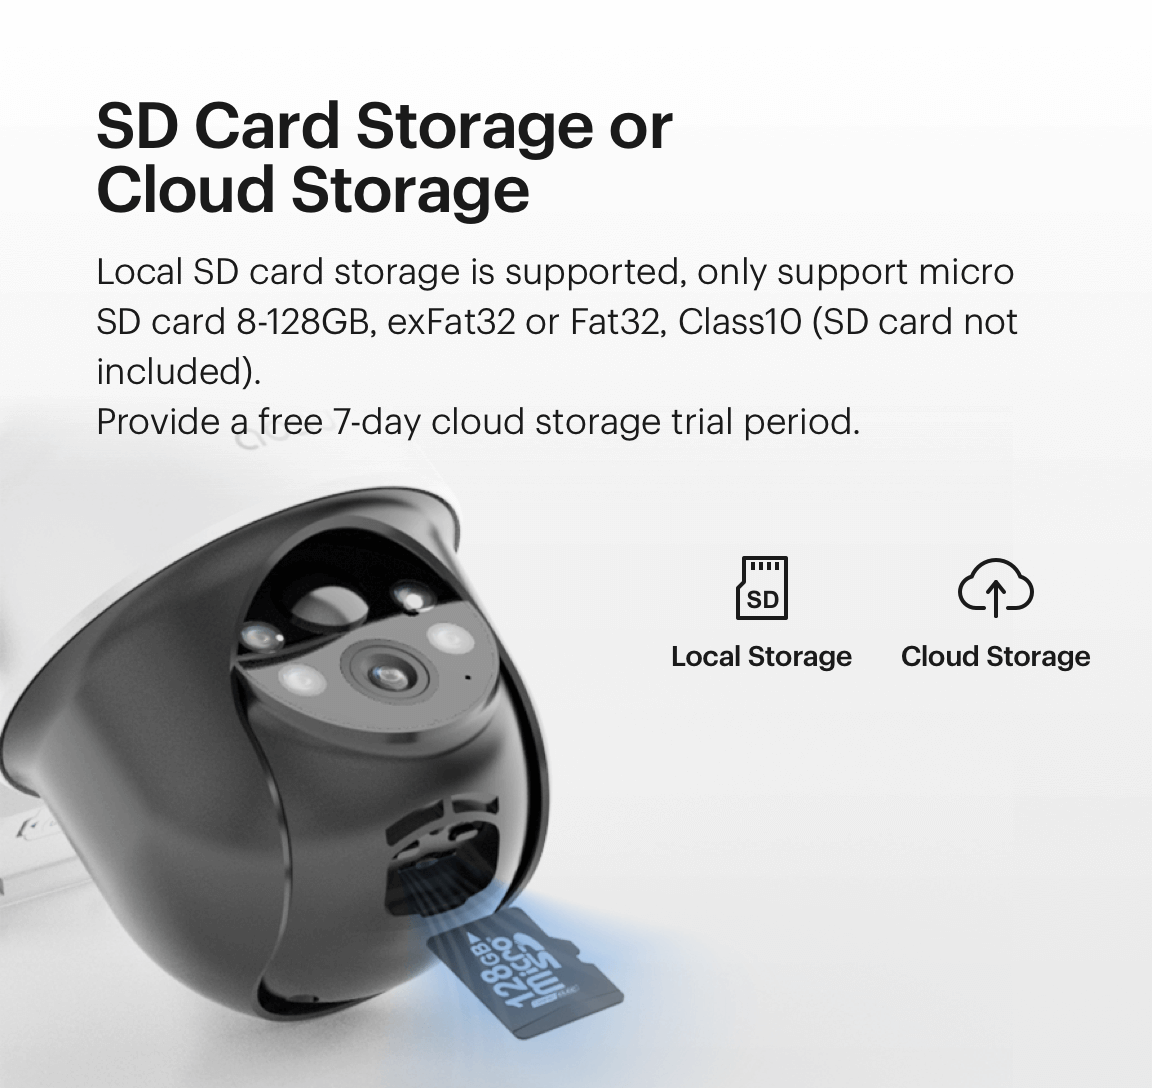 SD card storage or cluod storage